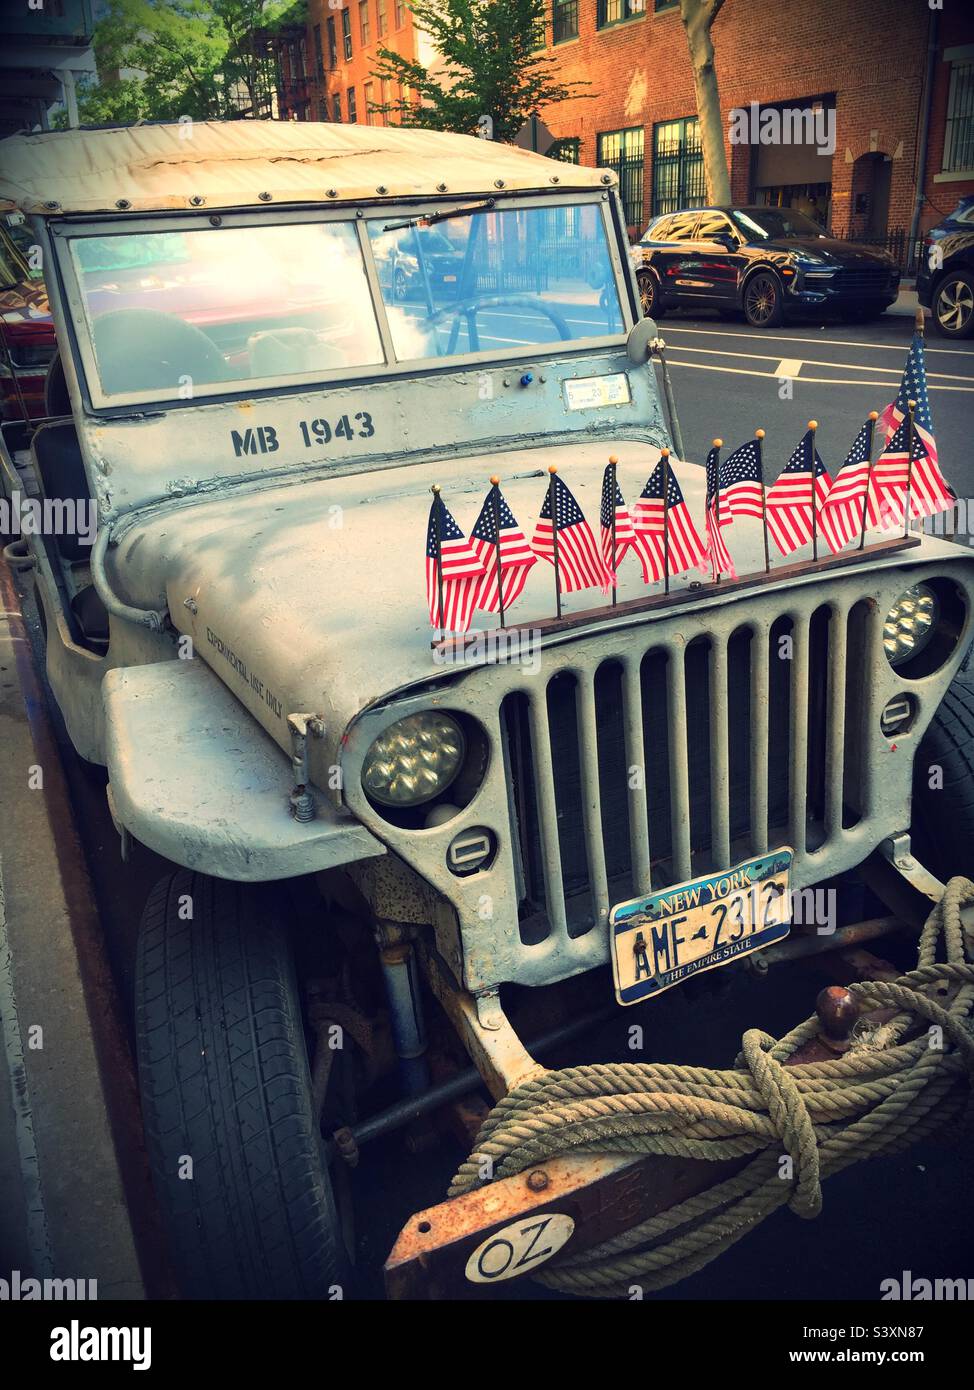 US-Flaggen auf einem 1943-Armee-Jeep, der in New York City geparkt ist Stockfoto